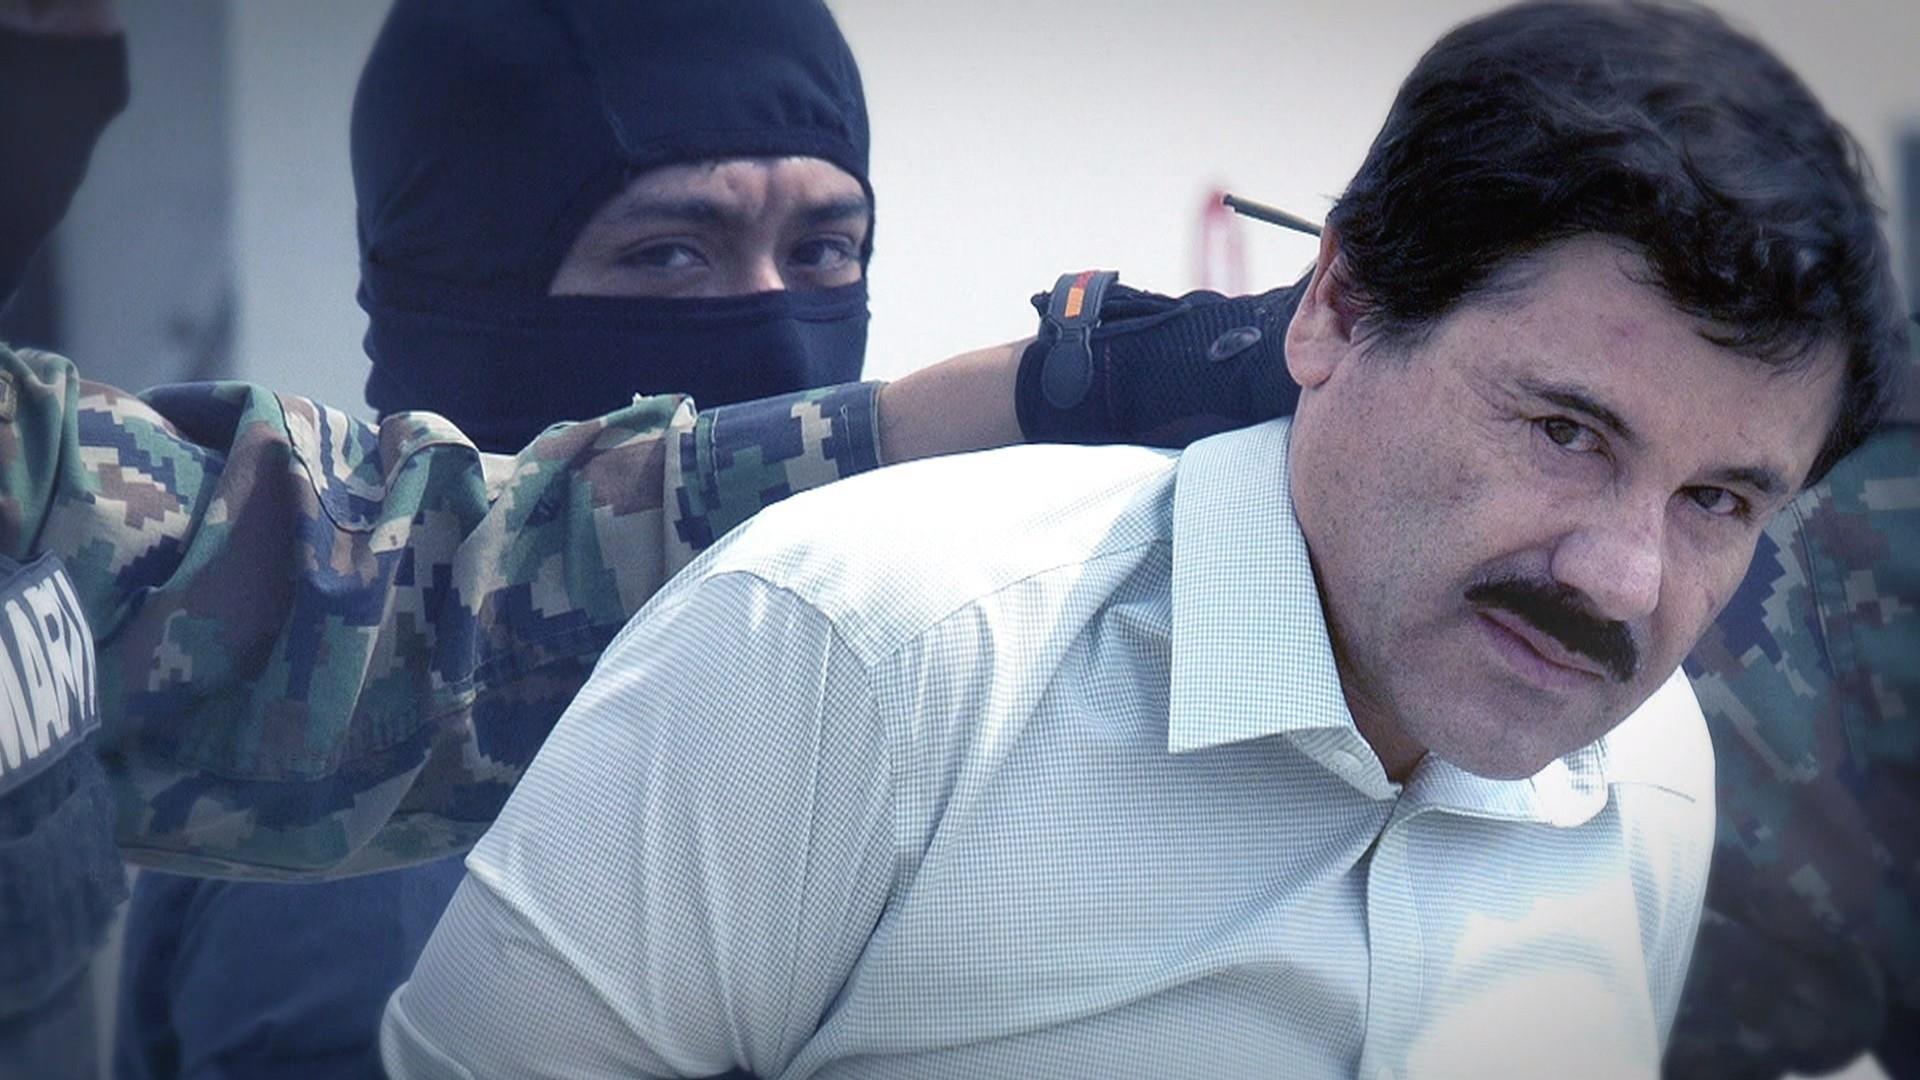 El Chapo trial begins, posing unprecedented risks.